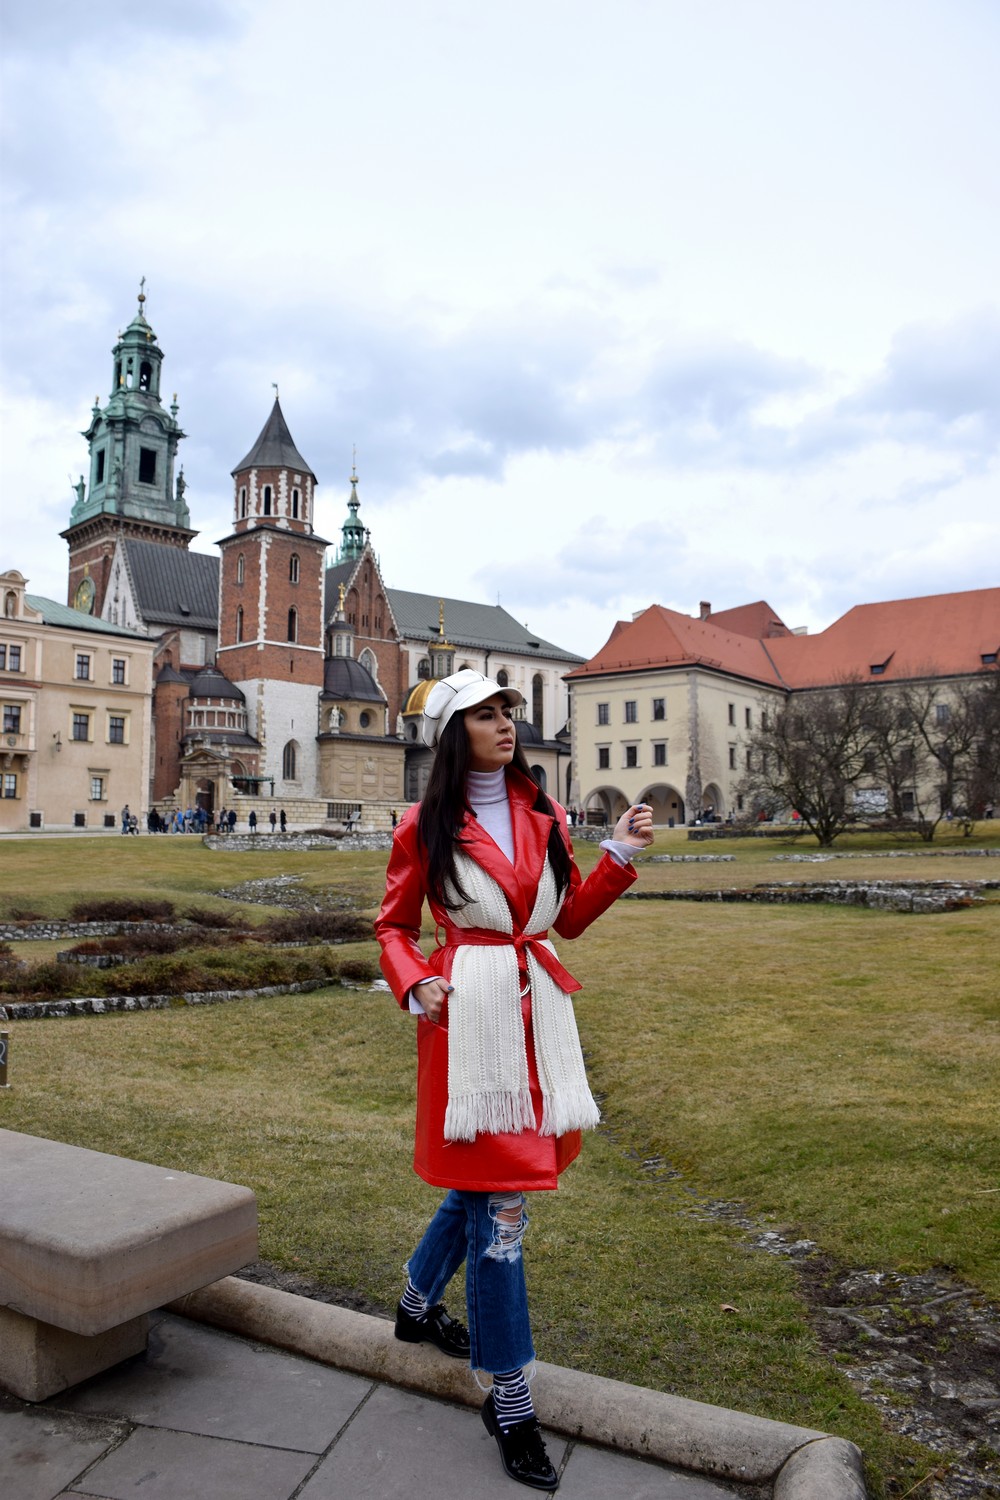 Wawel Castle 11